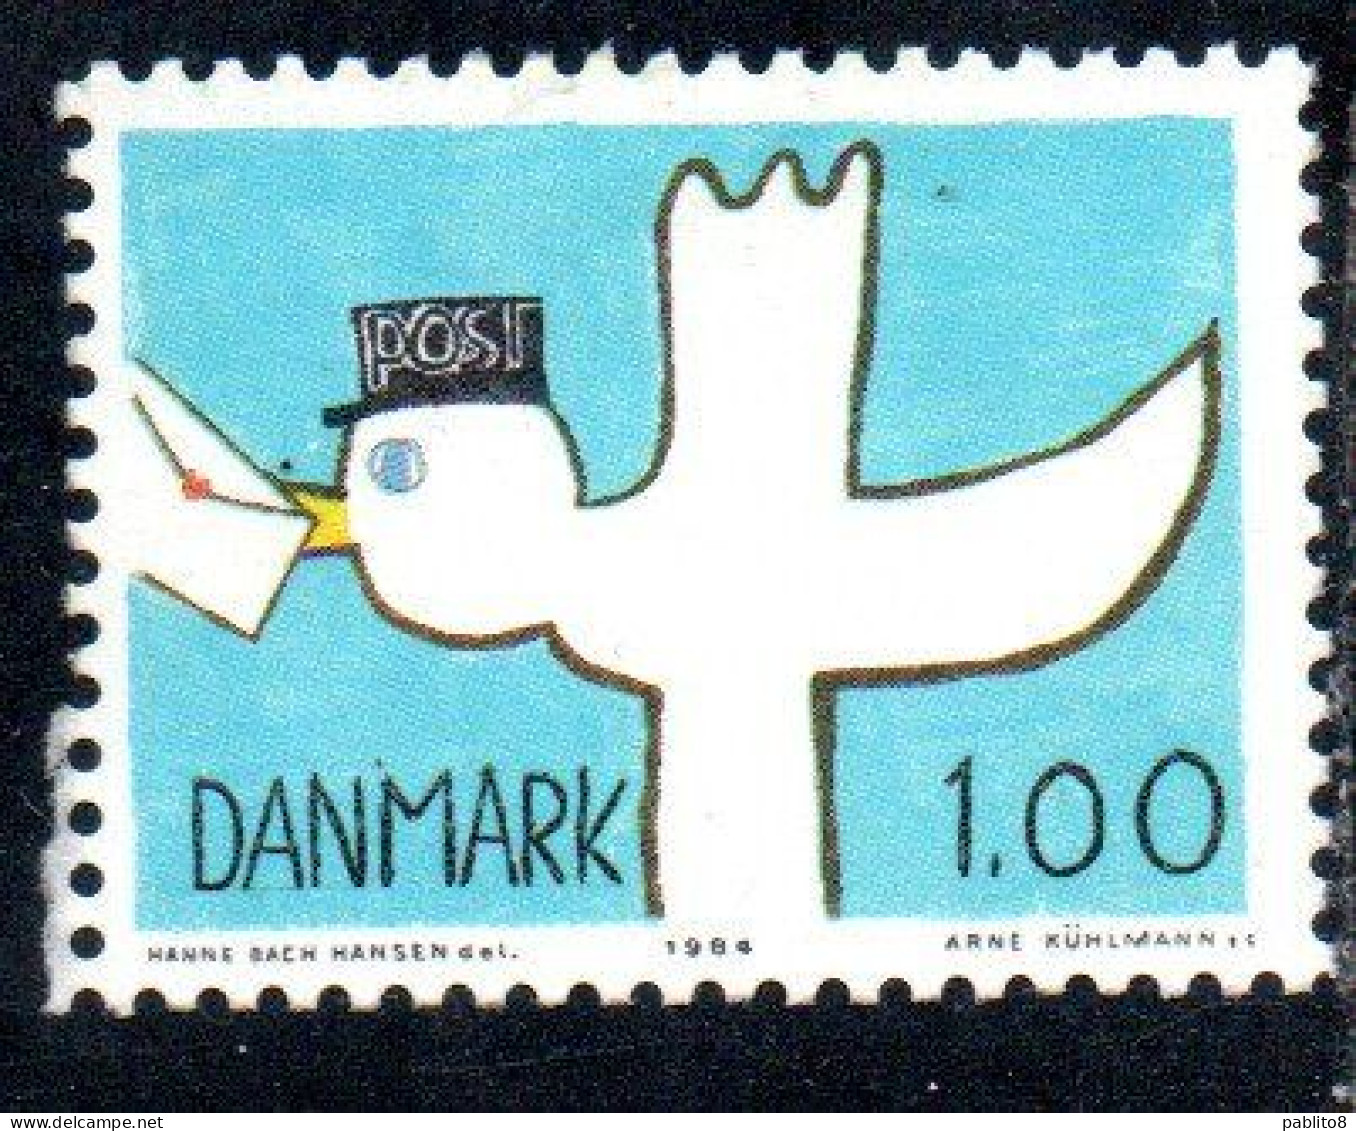 DANEMARK DANMARK DENMARK DANIMARCA 1984 POST BIRD 1k USED USATO OBLITERE - Used Stamps